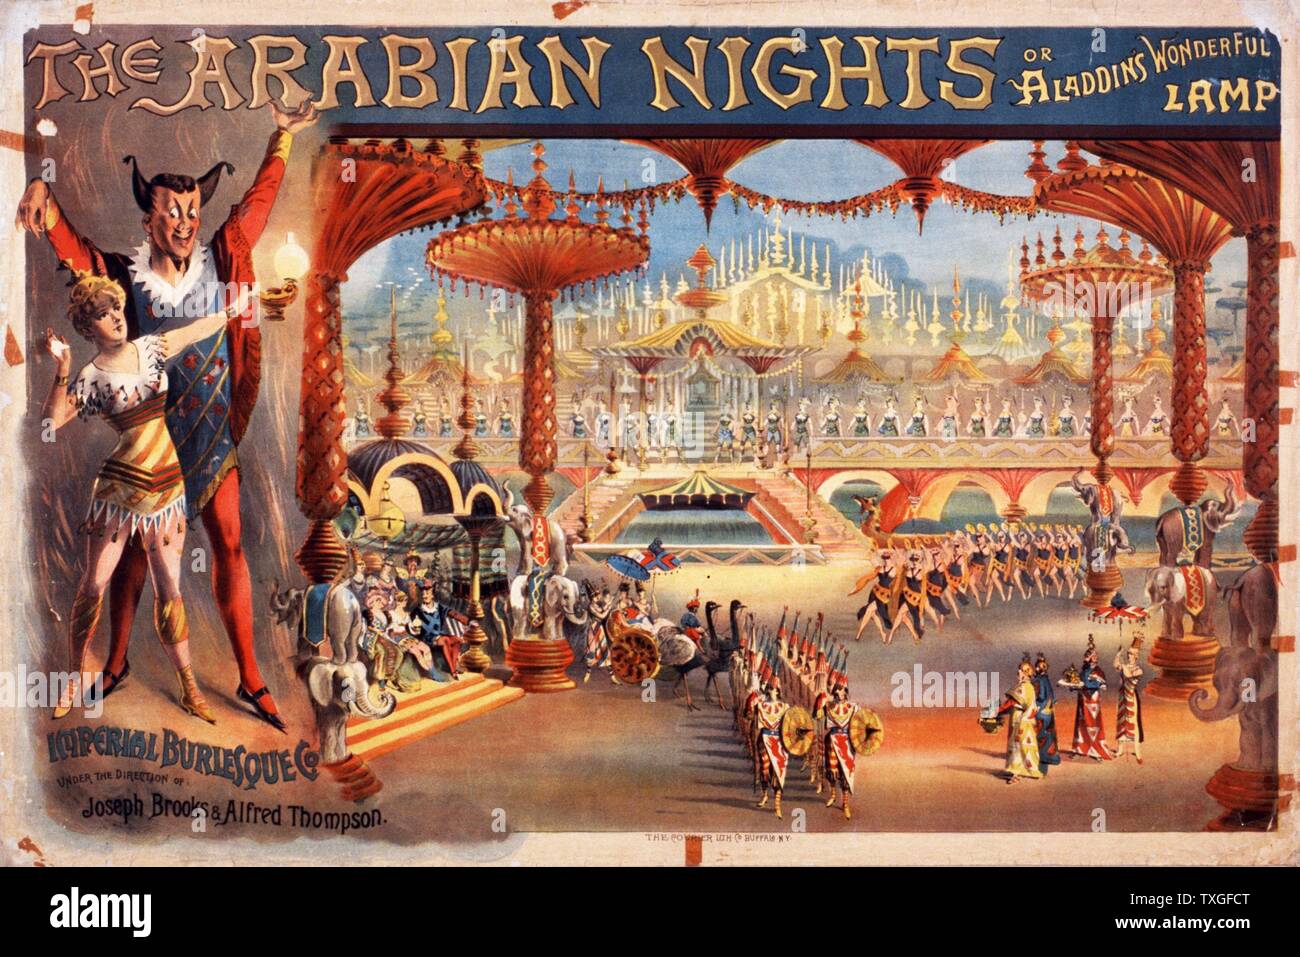 L'Arabian Nights, ou lampe merveilleuse d'ALADIN. Theatre affiche pour une production burlesque spectaculaire 1916. Banque D'Images